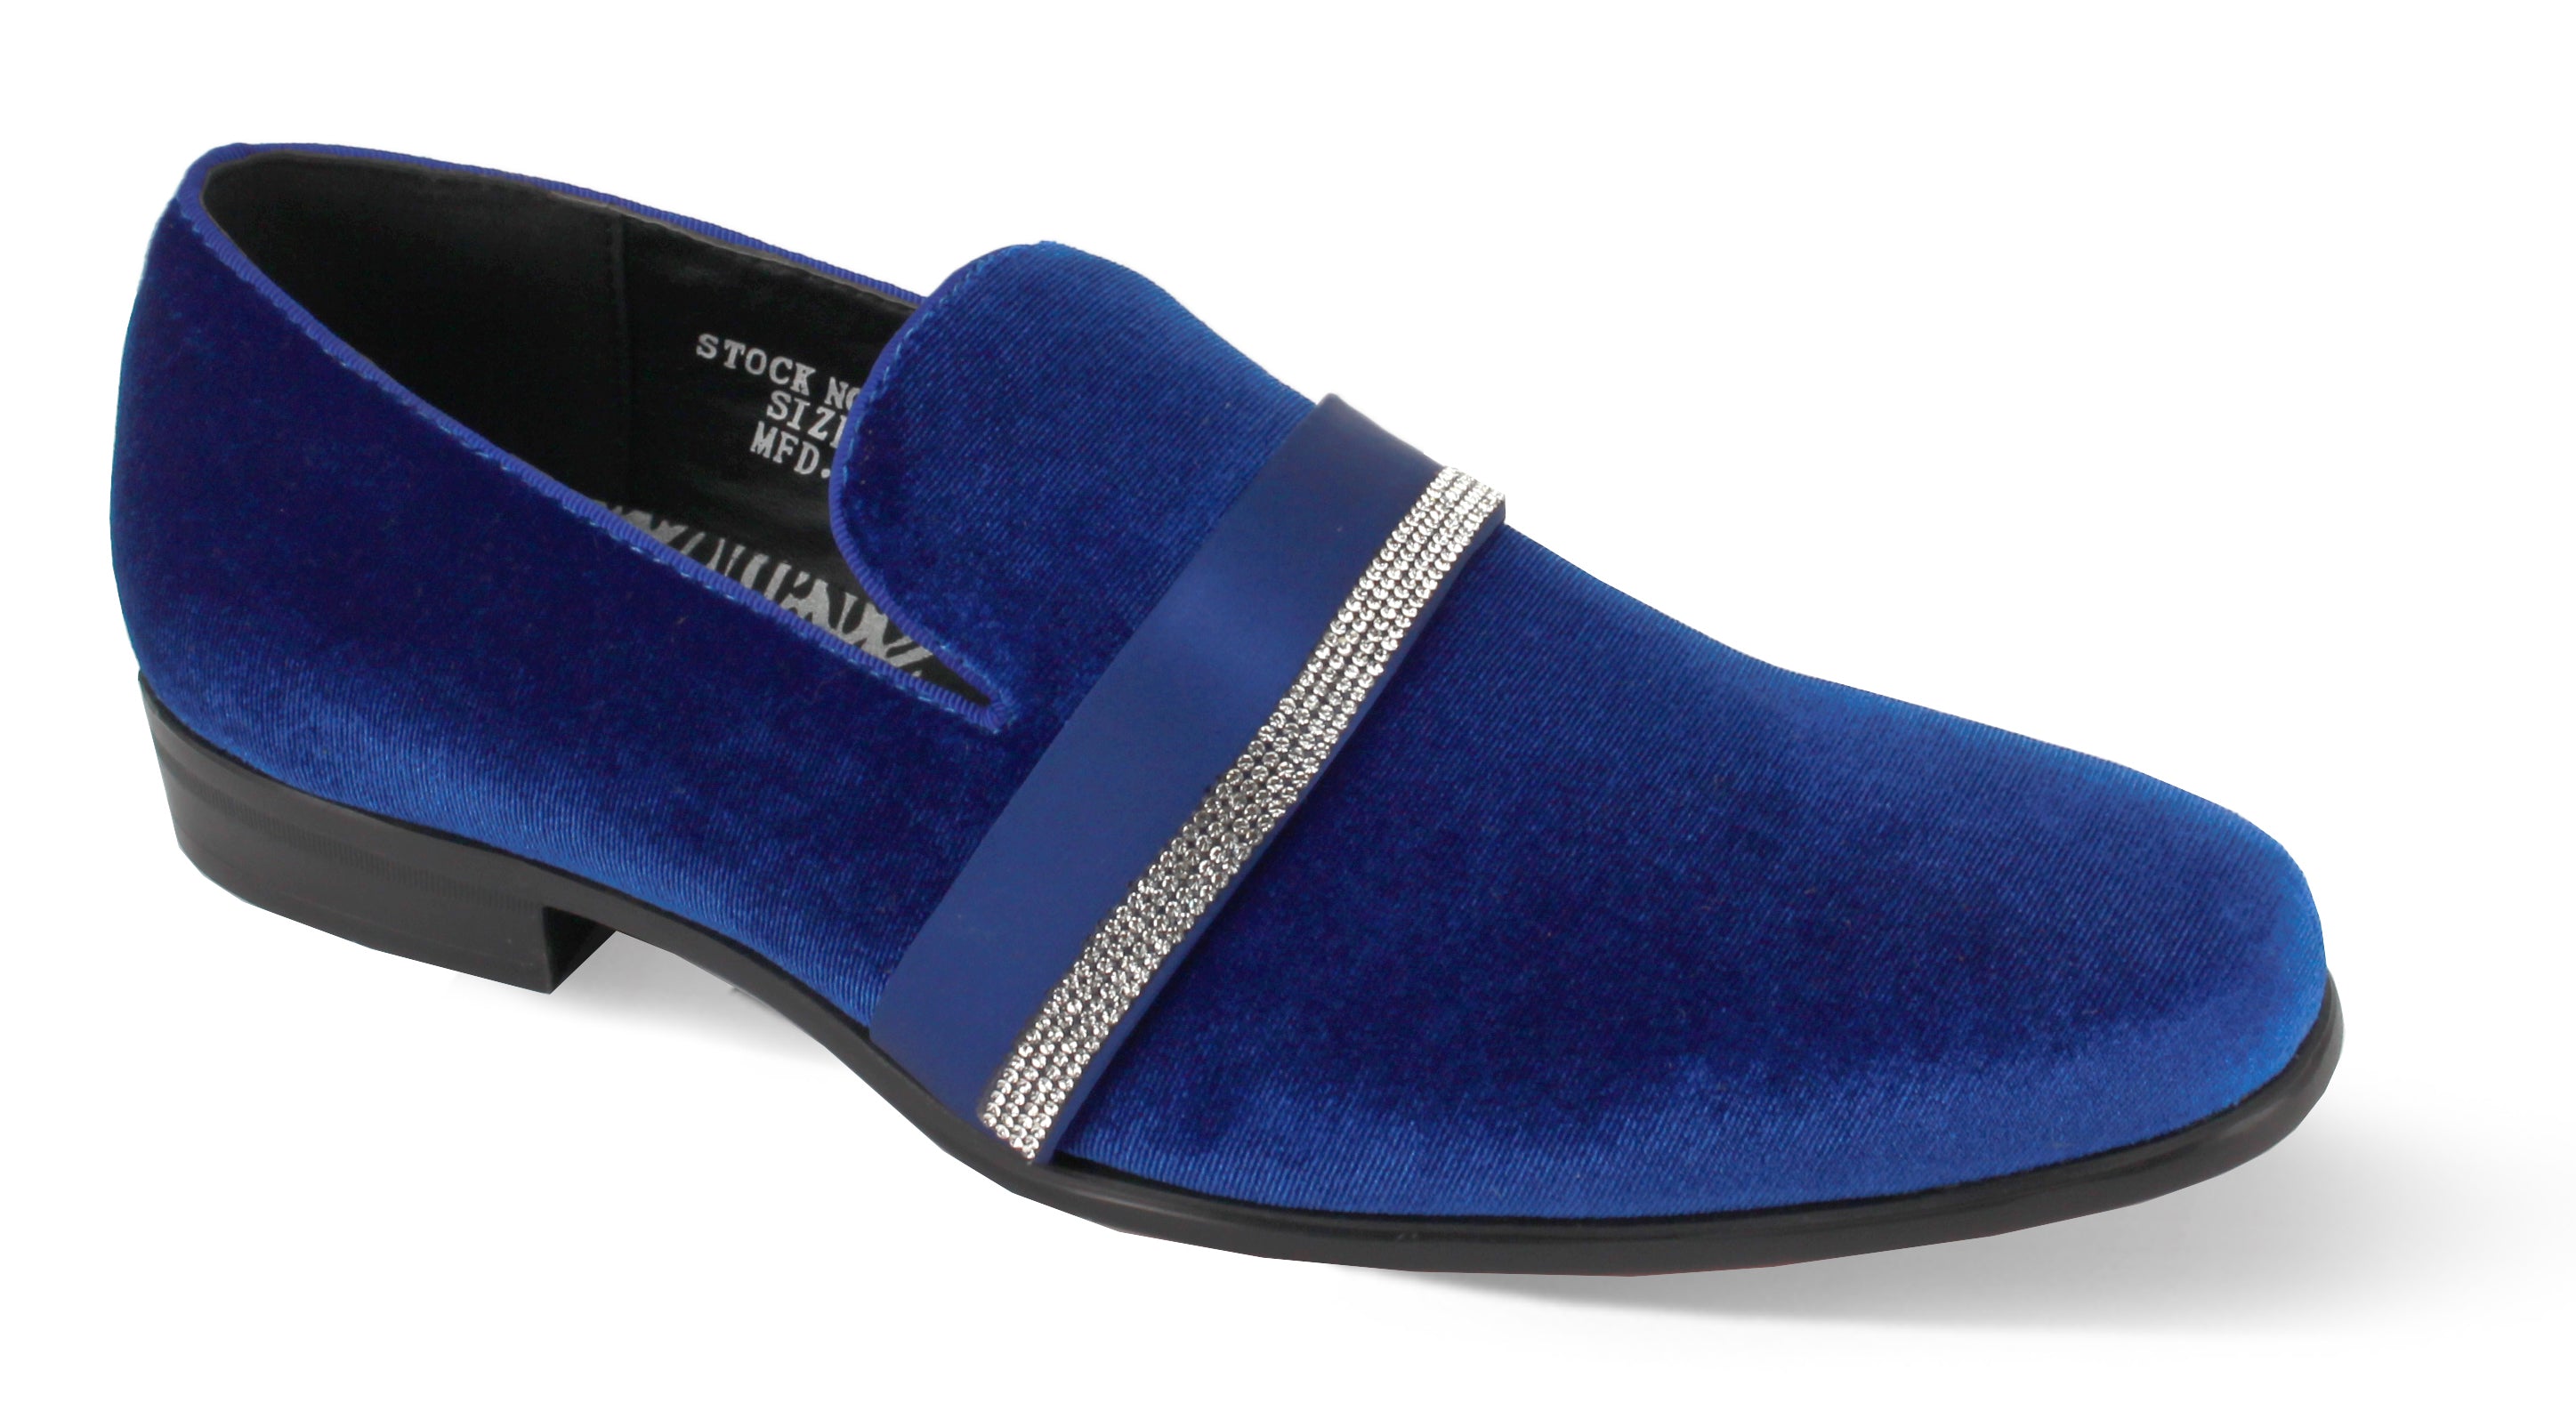 Plain Royal Blue Velvet Loafers